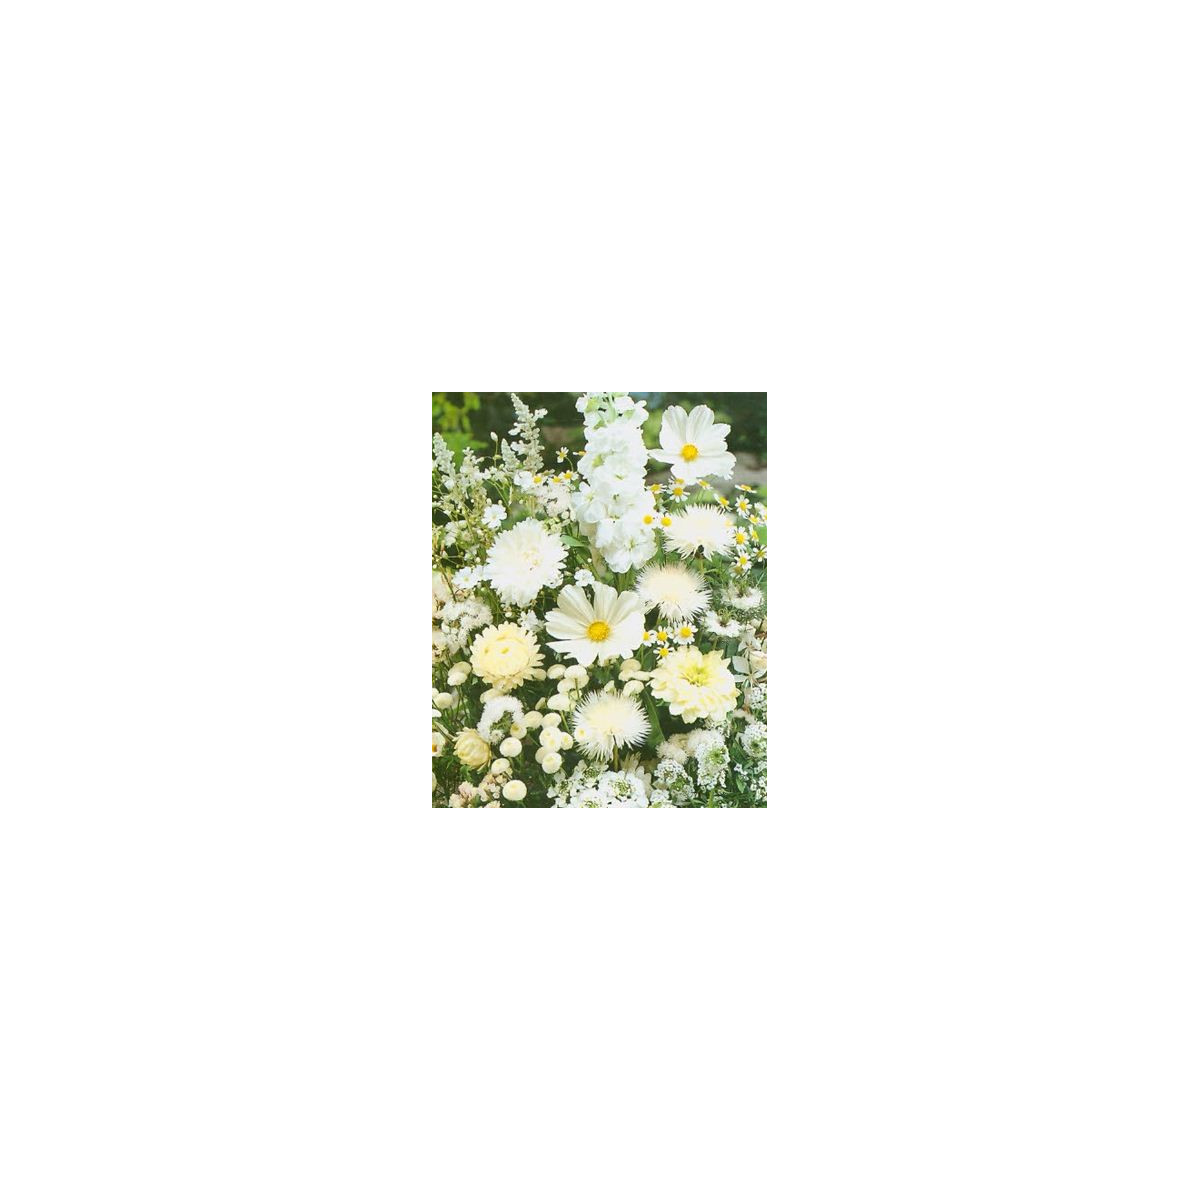 Zahradní sen v bílém - semena letniček - směs letniček - 0,9 g